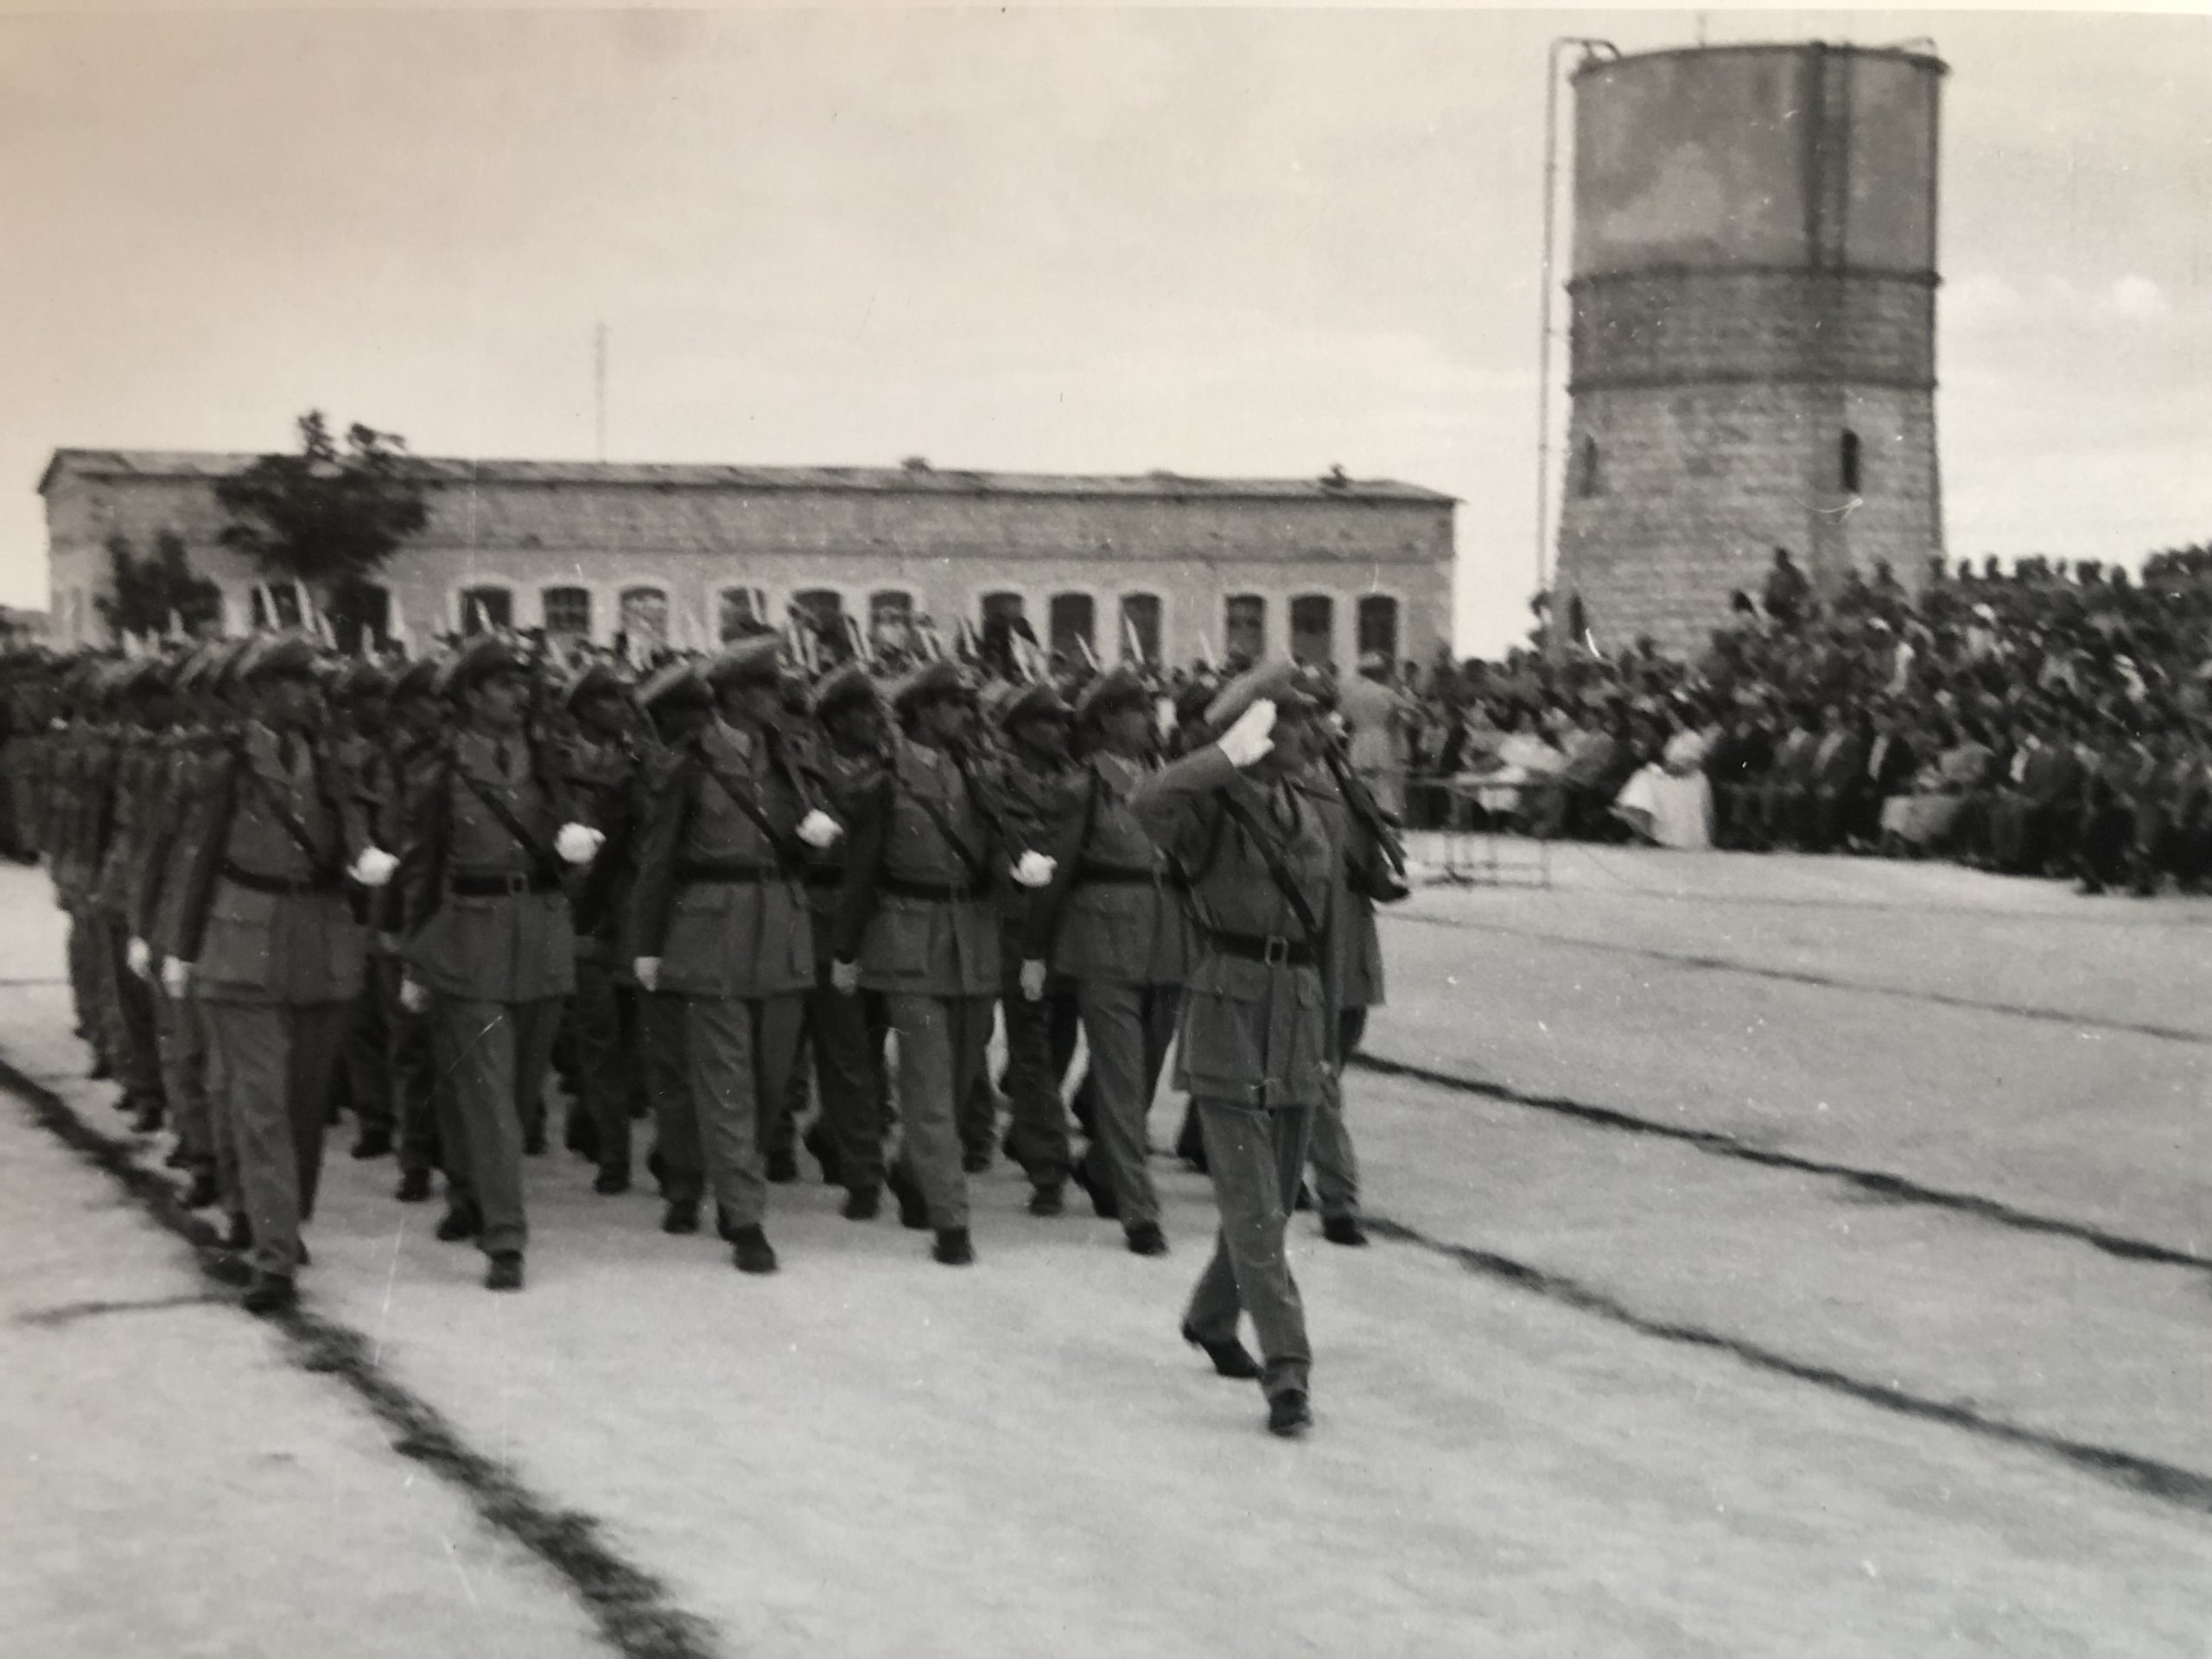 التاريخ السوري المعاصر - ضباط الاحتياط الدورة 23 أمام المنصة في حفل تخريجهم في حلب عام 1958